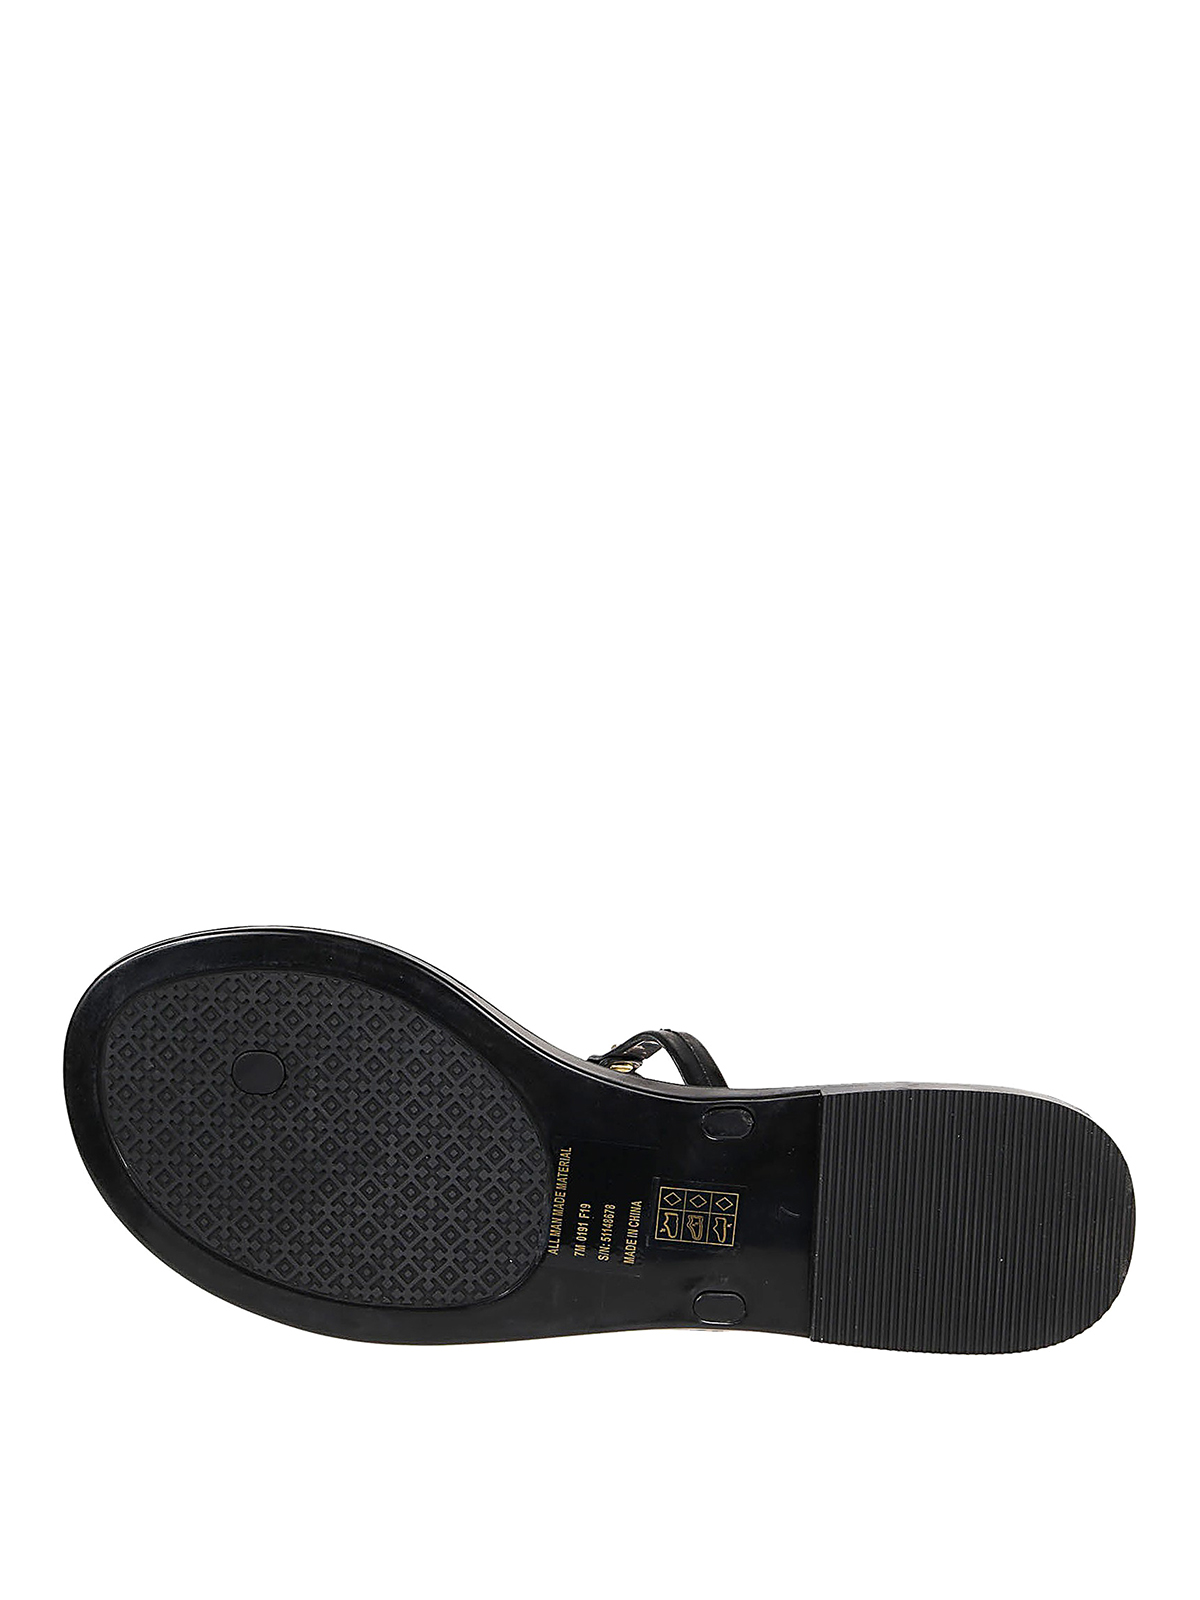 Flip flops Tory Burch - Mini Miller Jelly thong sandals - 51148678